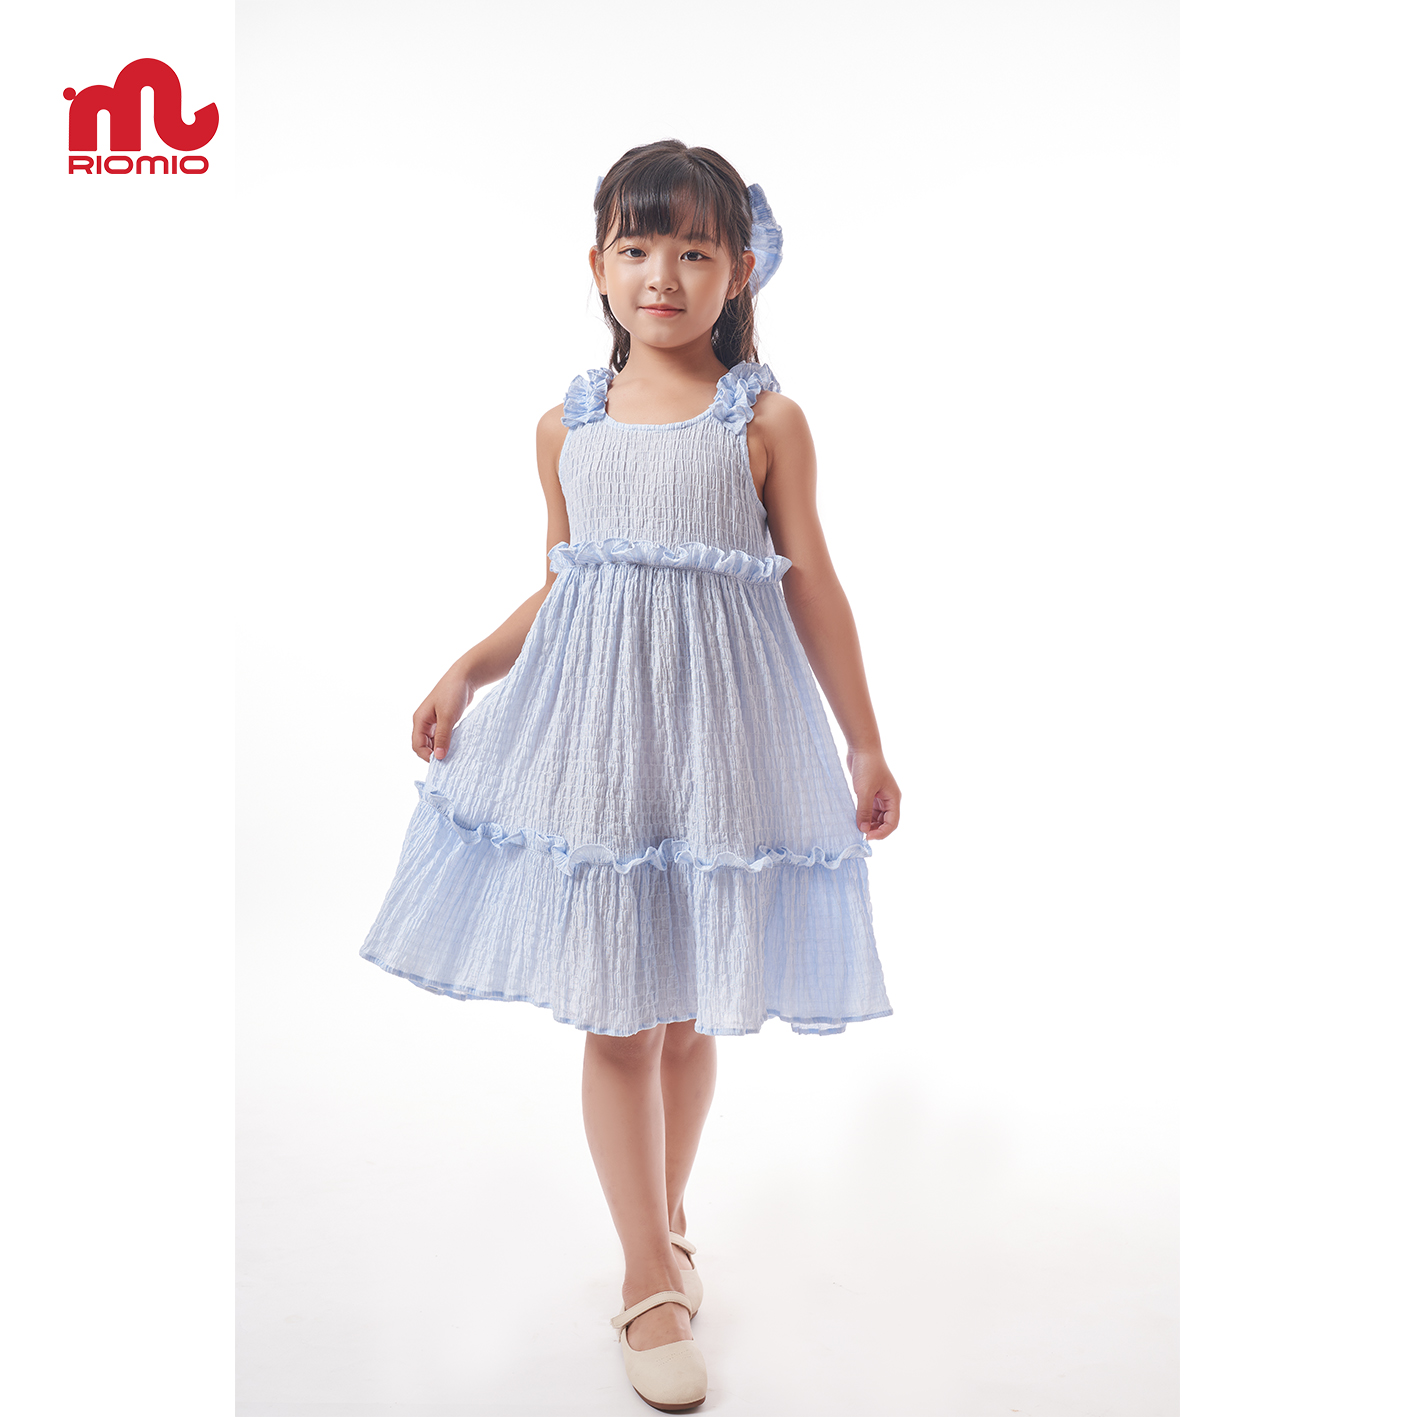 Váy cho bé gái RIOMIO 2 dây công chúa xinh đẹp cho trẻ em 2 màu hồng xanh xếp bèo - RV111